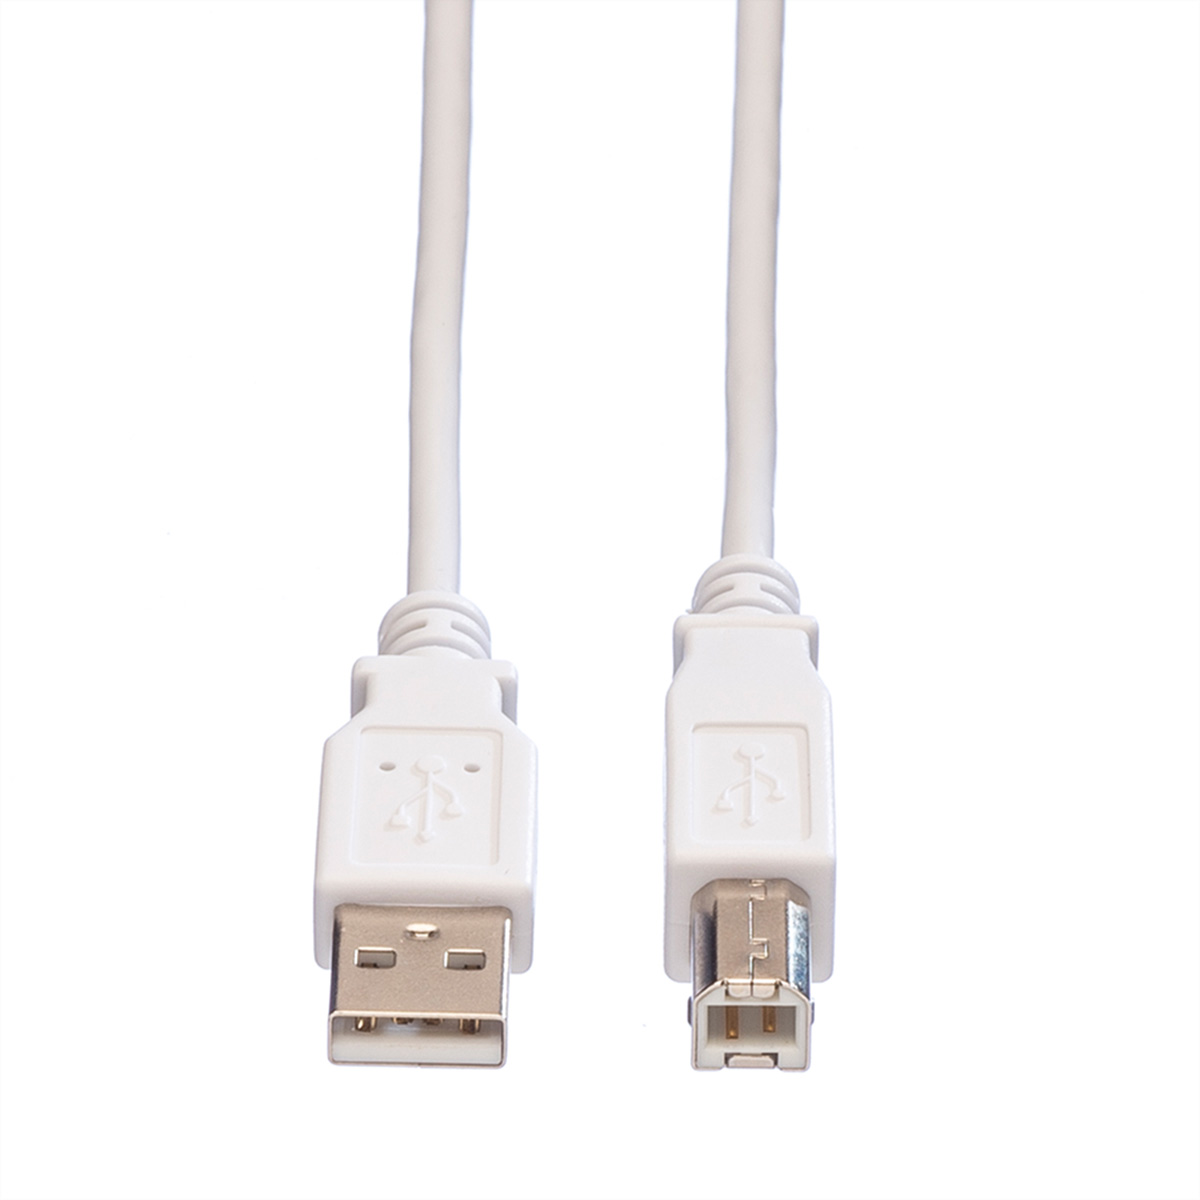 Kabel 2.0 VALUE USB USB Kabel 2.0